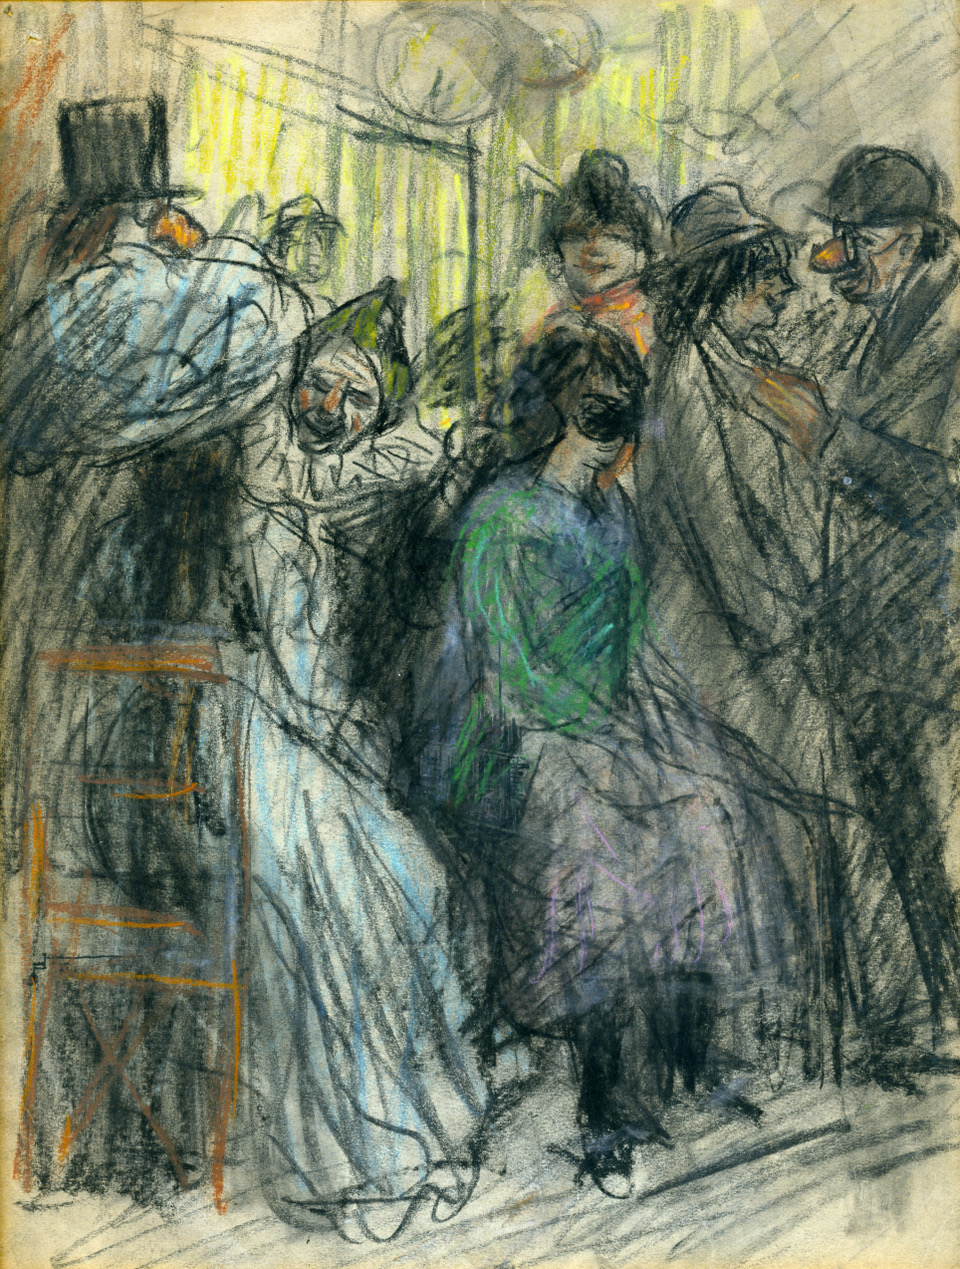 Eugeen Van Mieghem (1875-1930), Carnaval (avec Augustine), 1902. Crayons de couleur, 21 x 16 cm. Collection privée. © DR